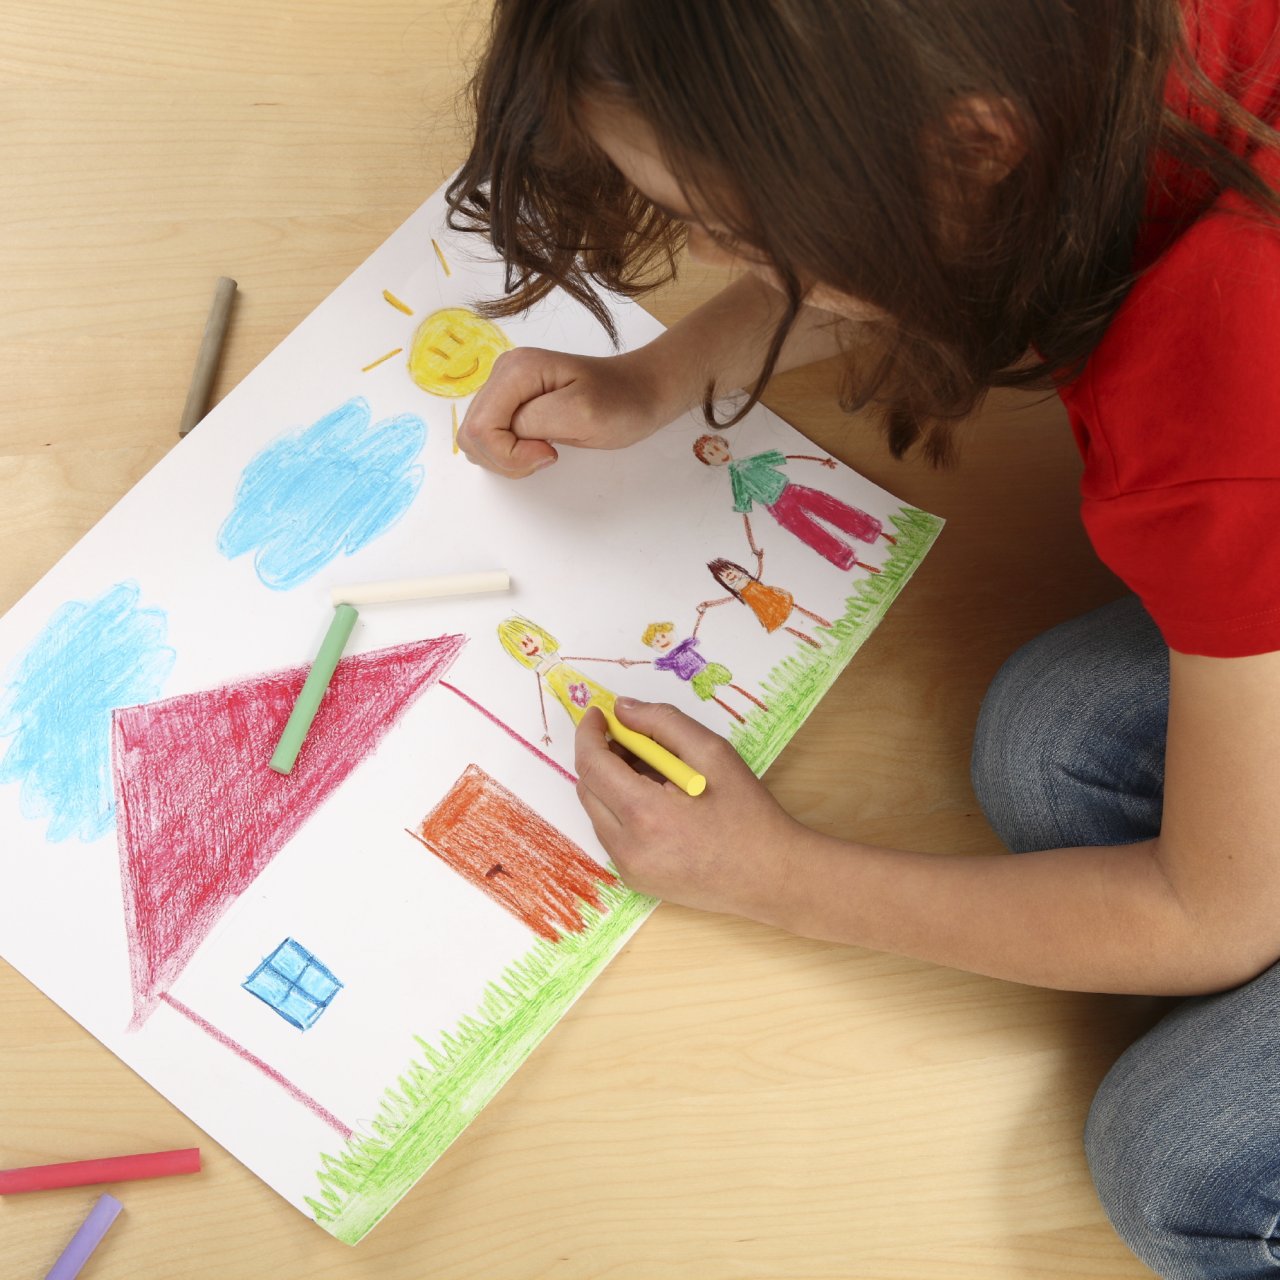 Mädchen malt auf einem weissen Papier ein schönes farbiges Bild mit Wachsmalstiften. Auf dem Bild hat es ein Haus mit einer 4-köpfigen Familie, eine Sonne und zwei Wolken.